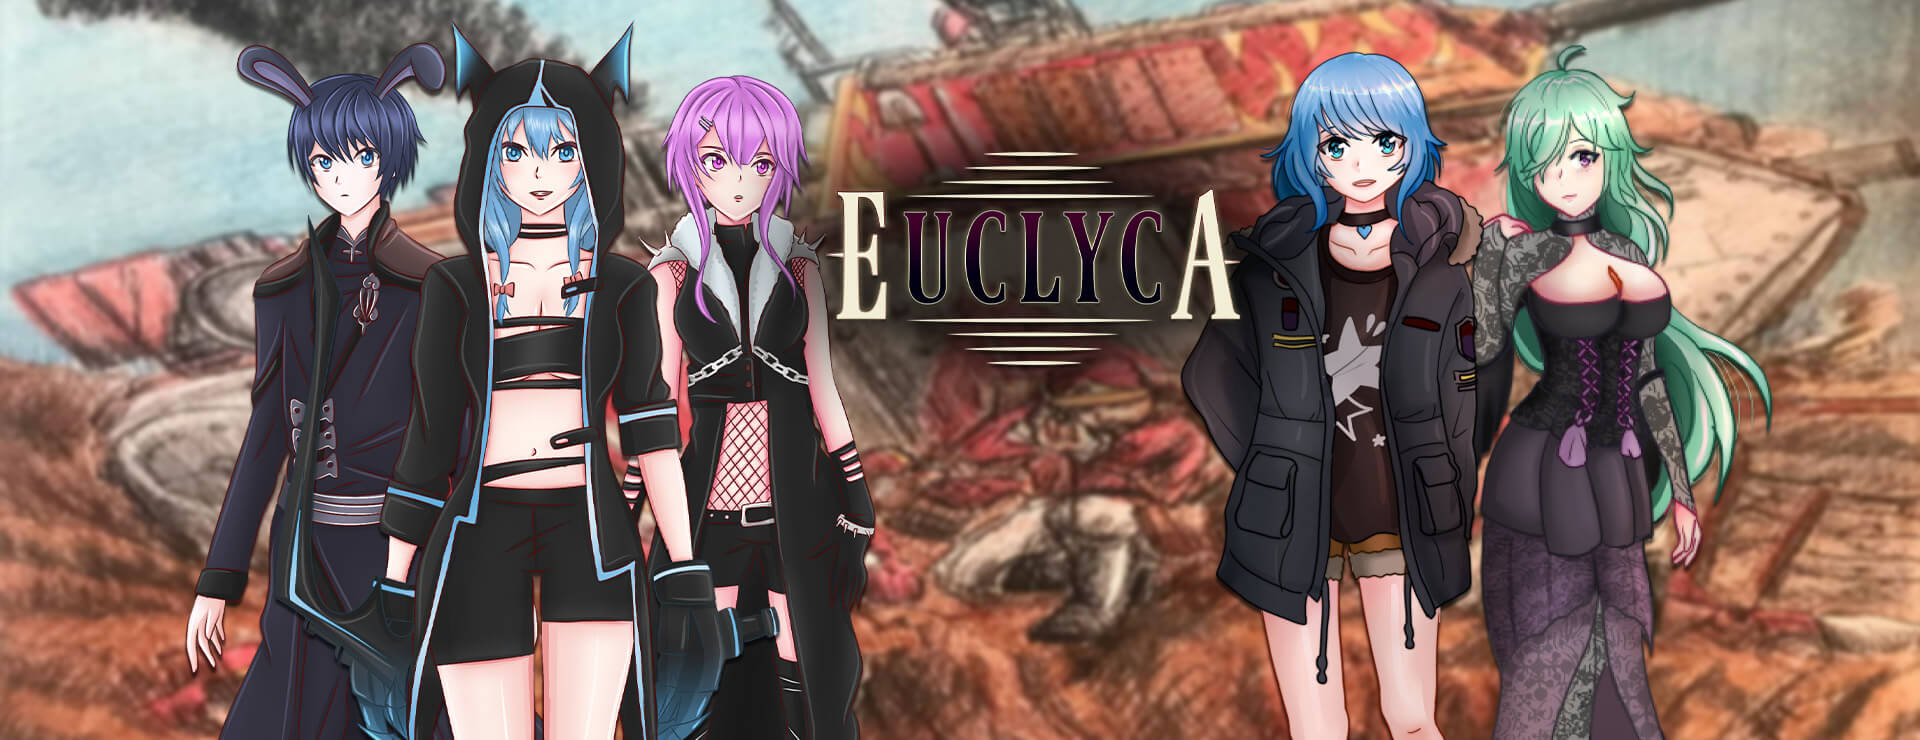 Euclyca - RPG Jeu